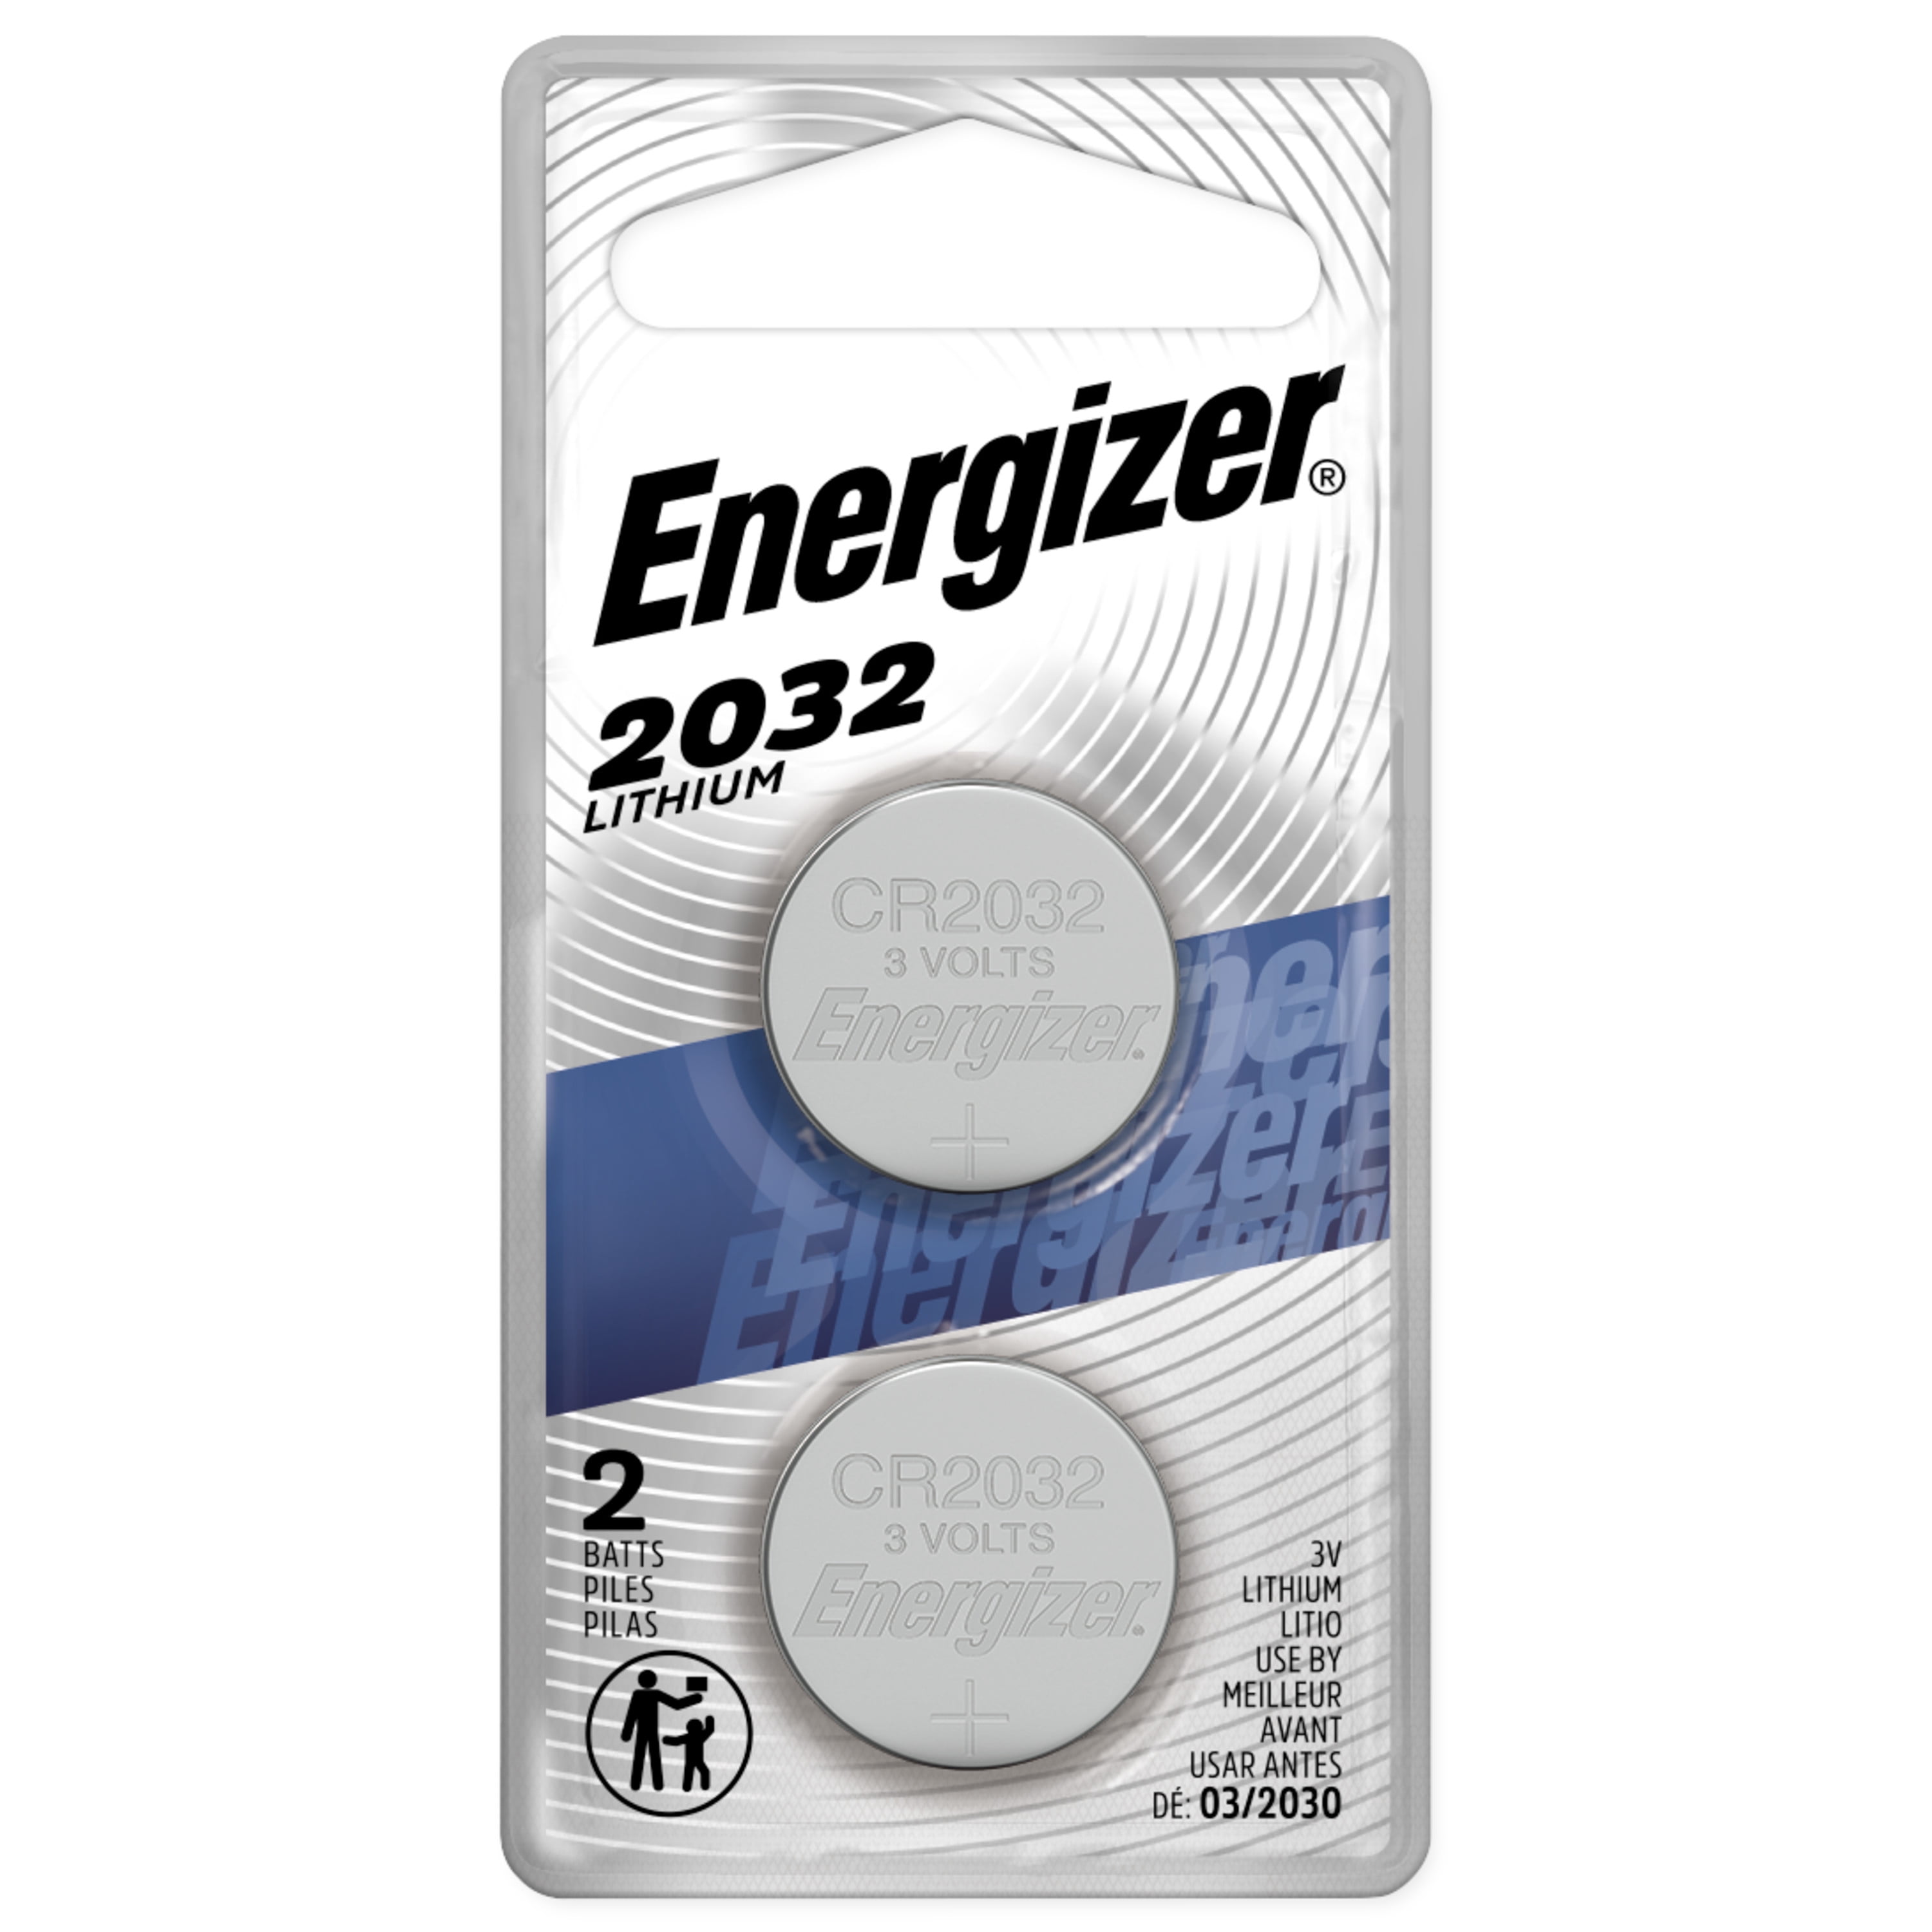 Zinge Industries Battery CR2032 Set of 10 Batteries Large 20mm 3V Lithium EBAT01 